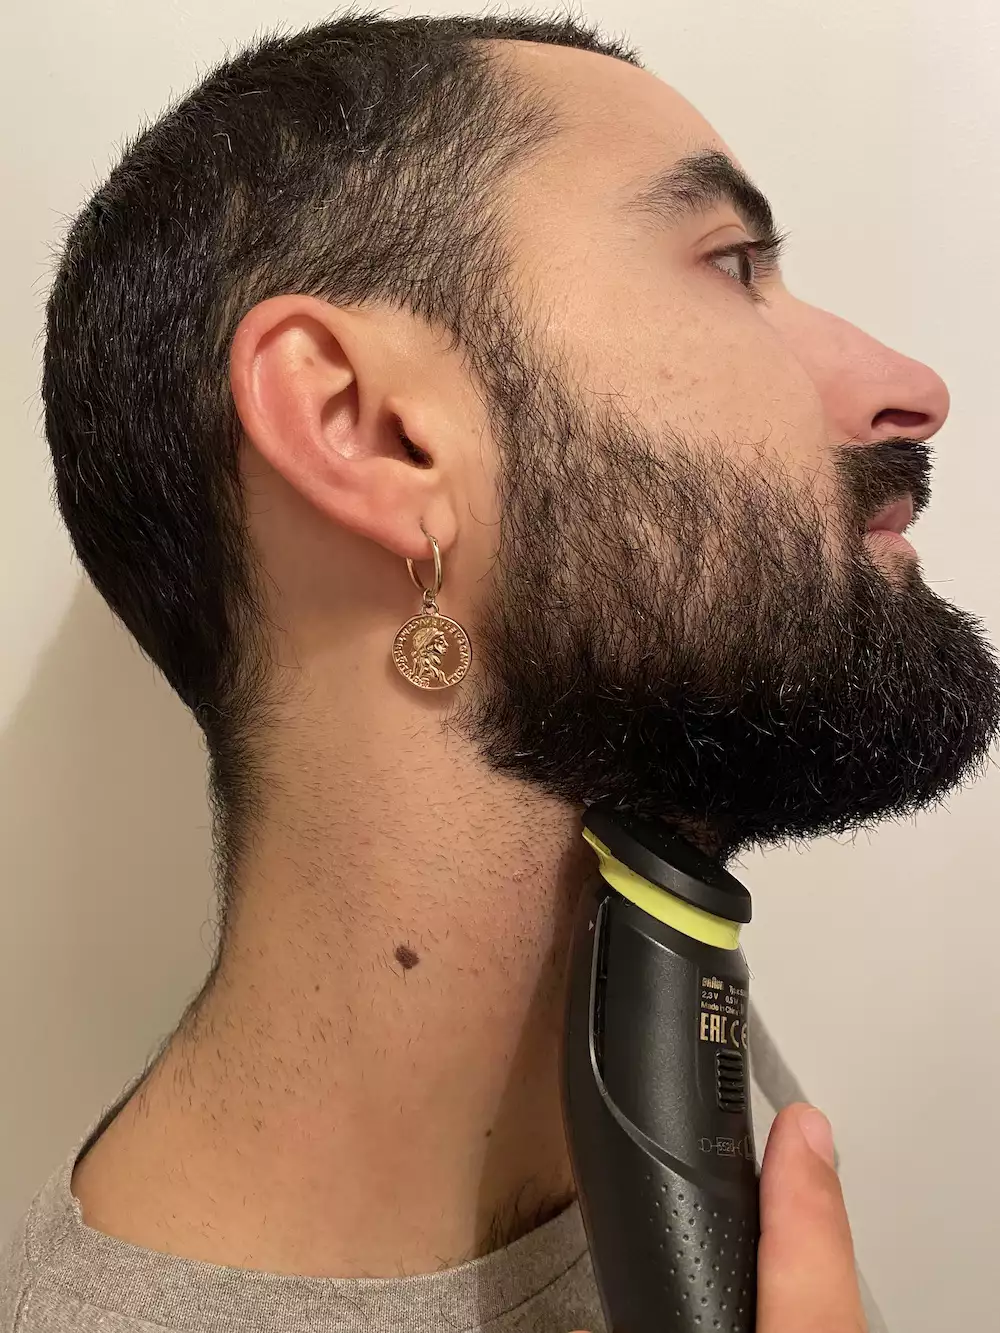 Beard neckline 3